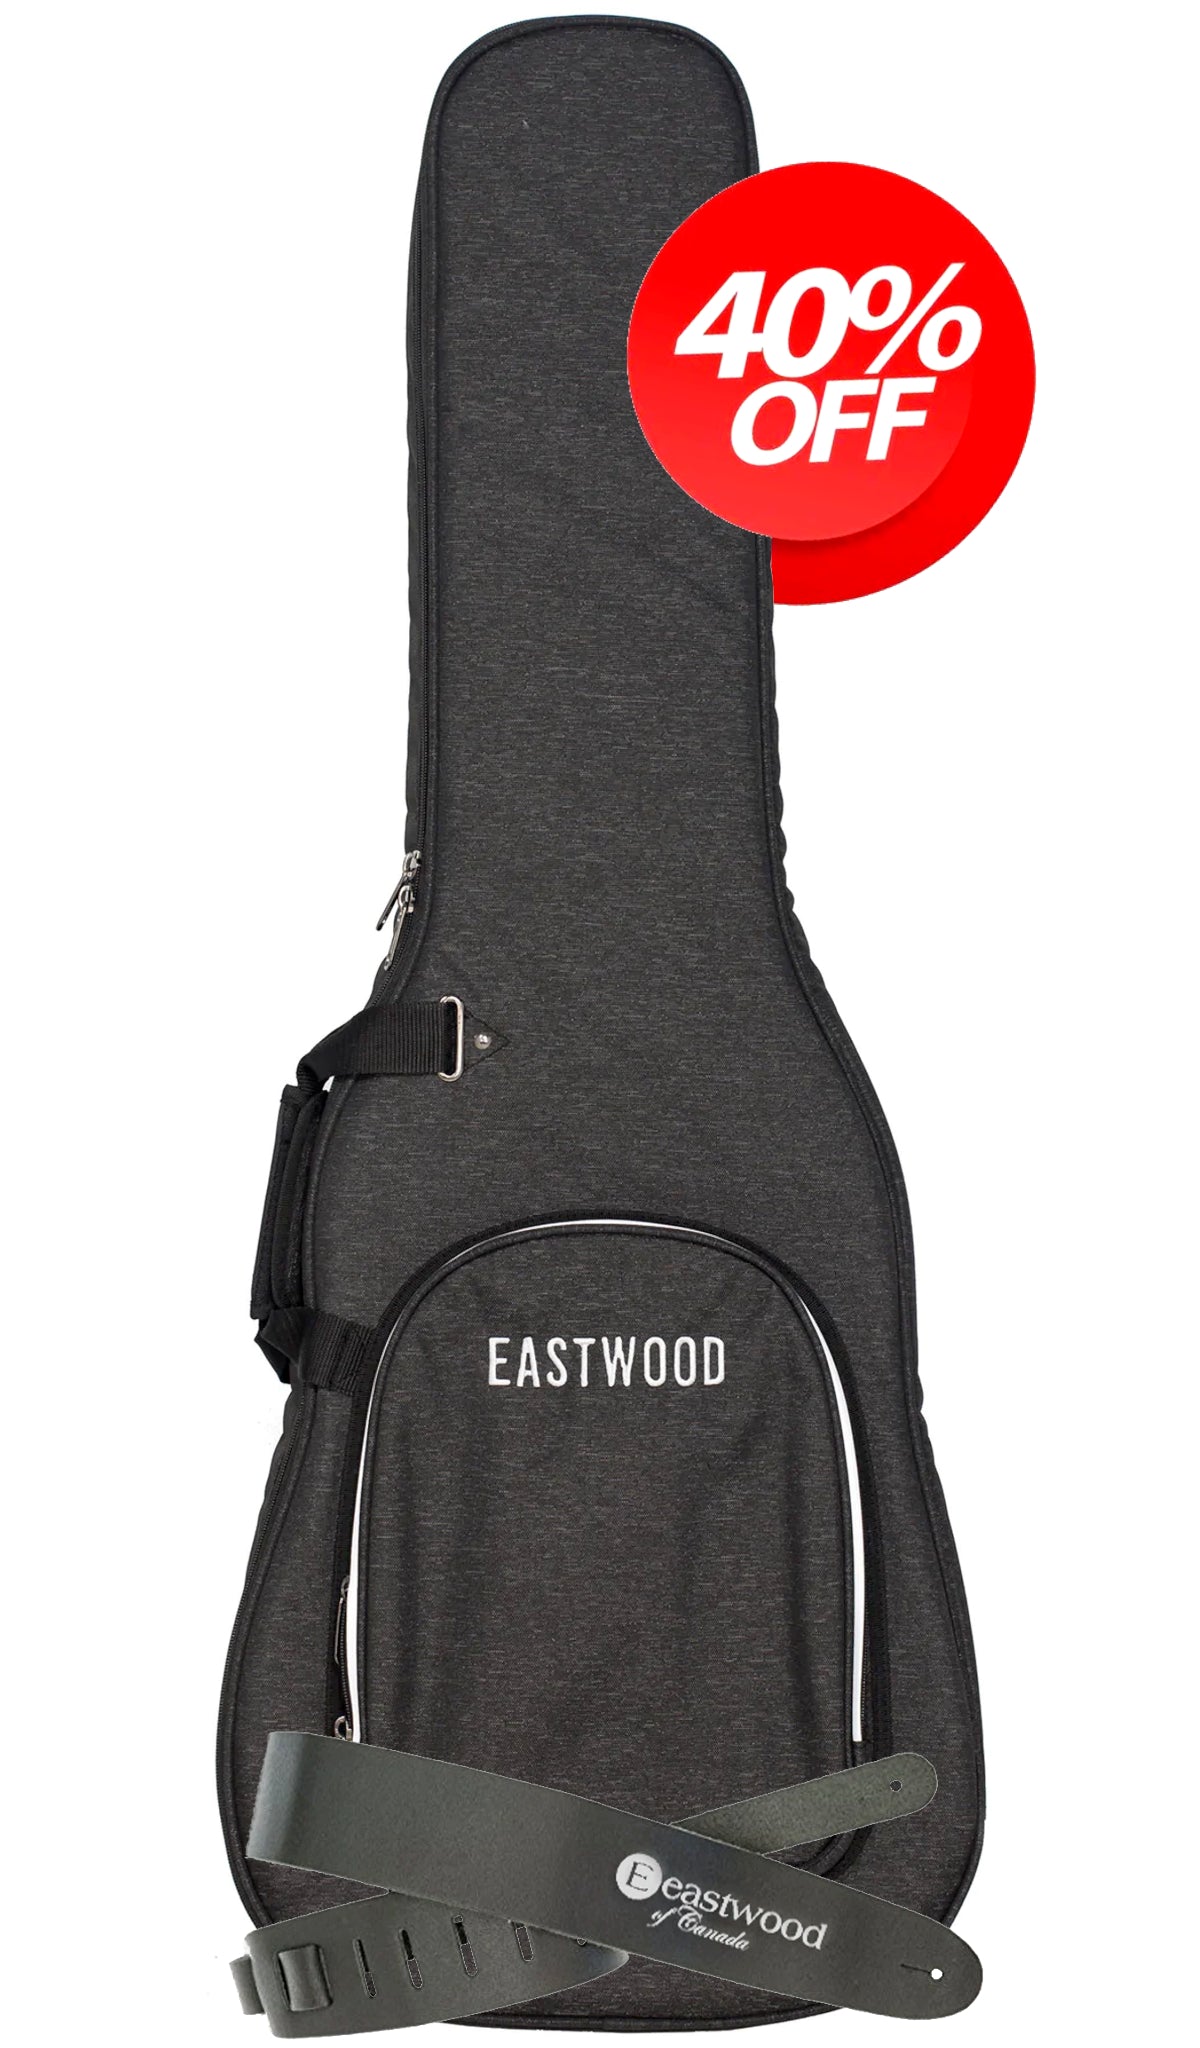 Eastwood Premium Pack Standard Guitar #size_standard-guitar